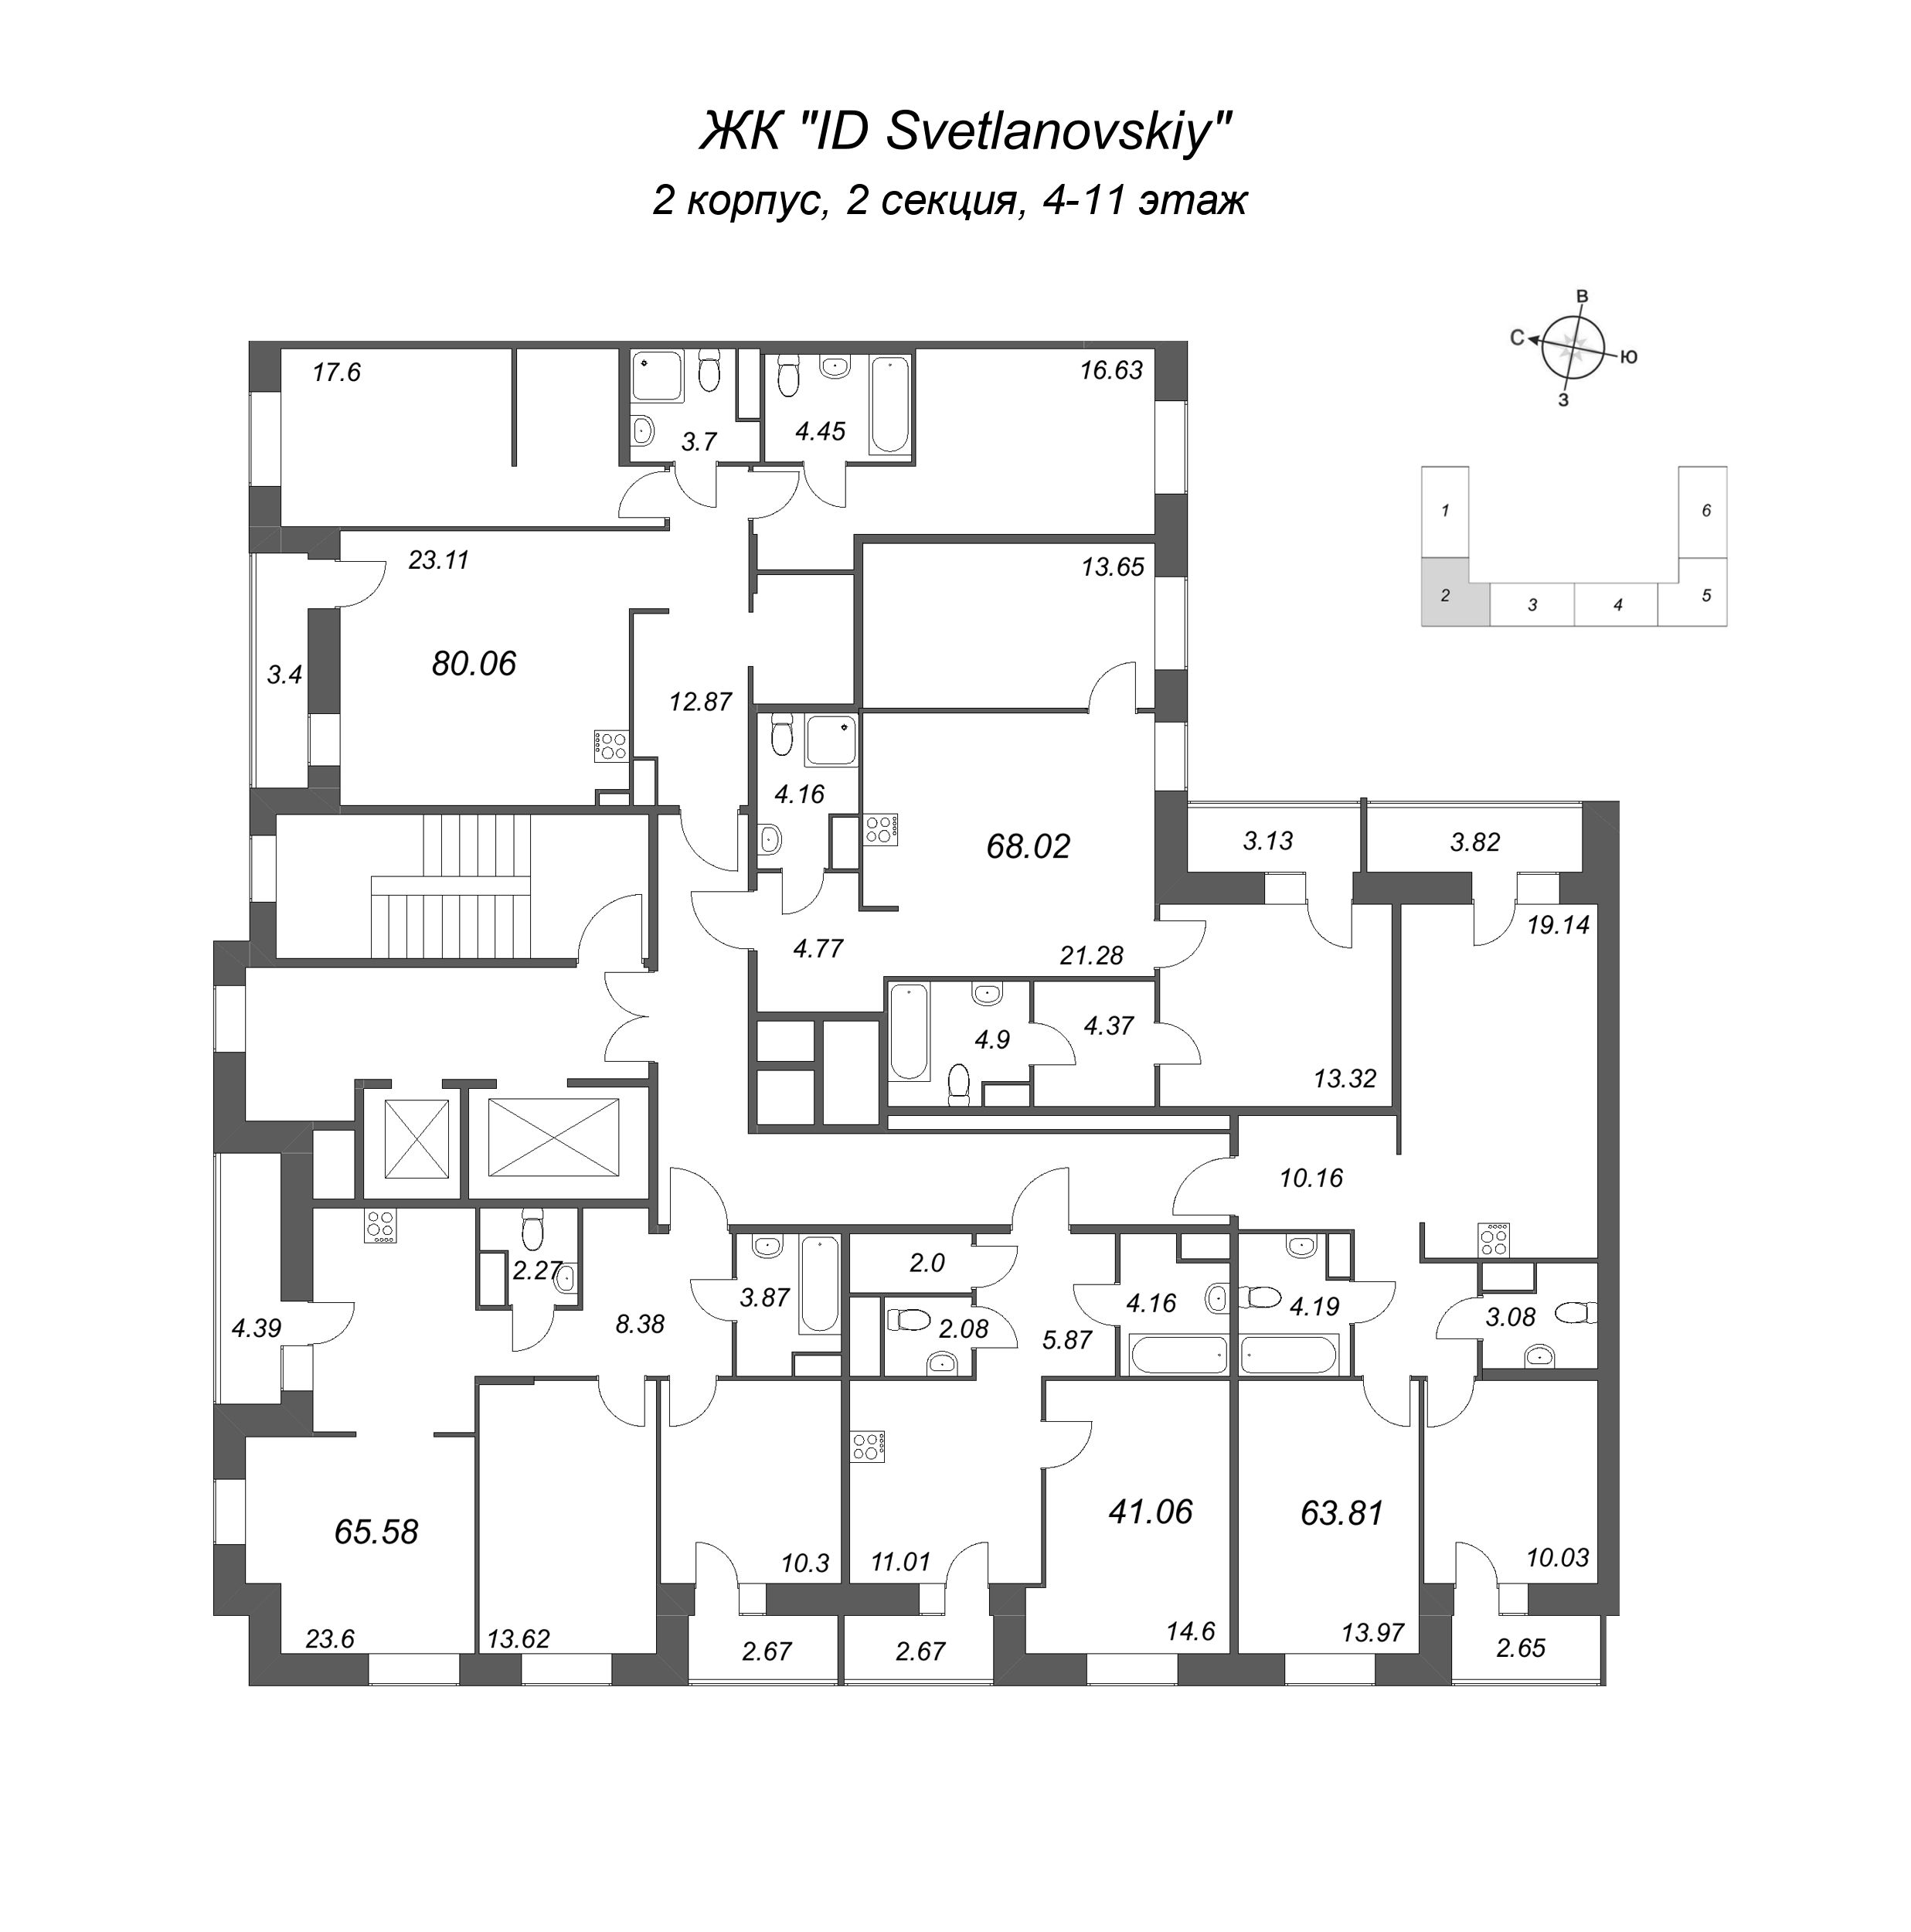 1-комнатная квартира, 41.06 м² в ЖК "ID Svetlanovskiy" - планировка этажа